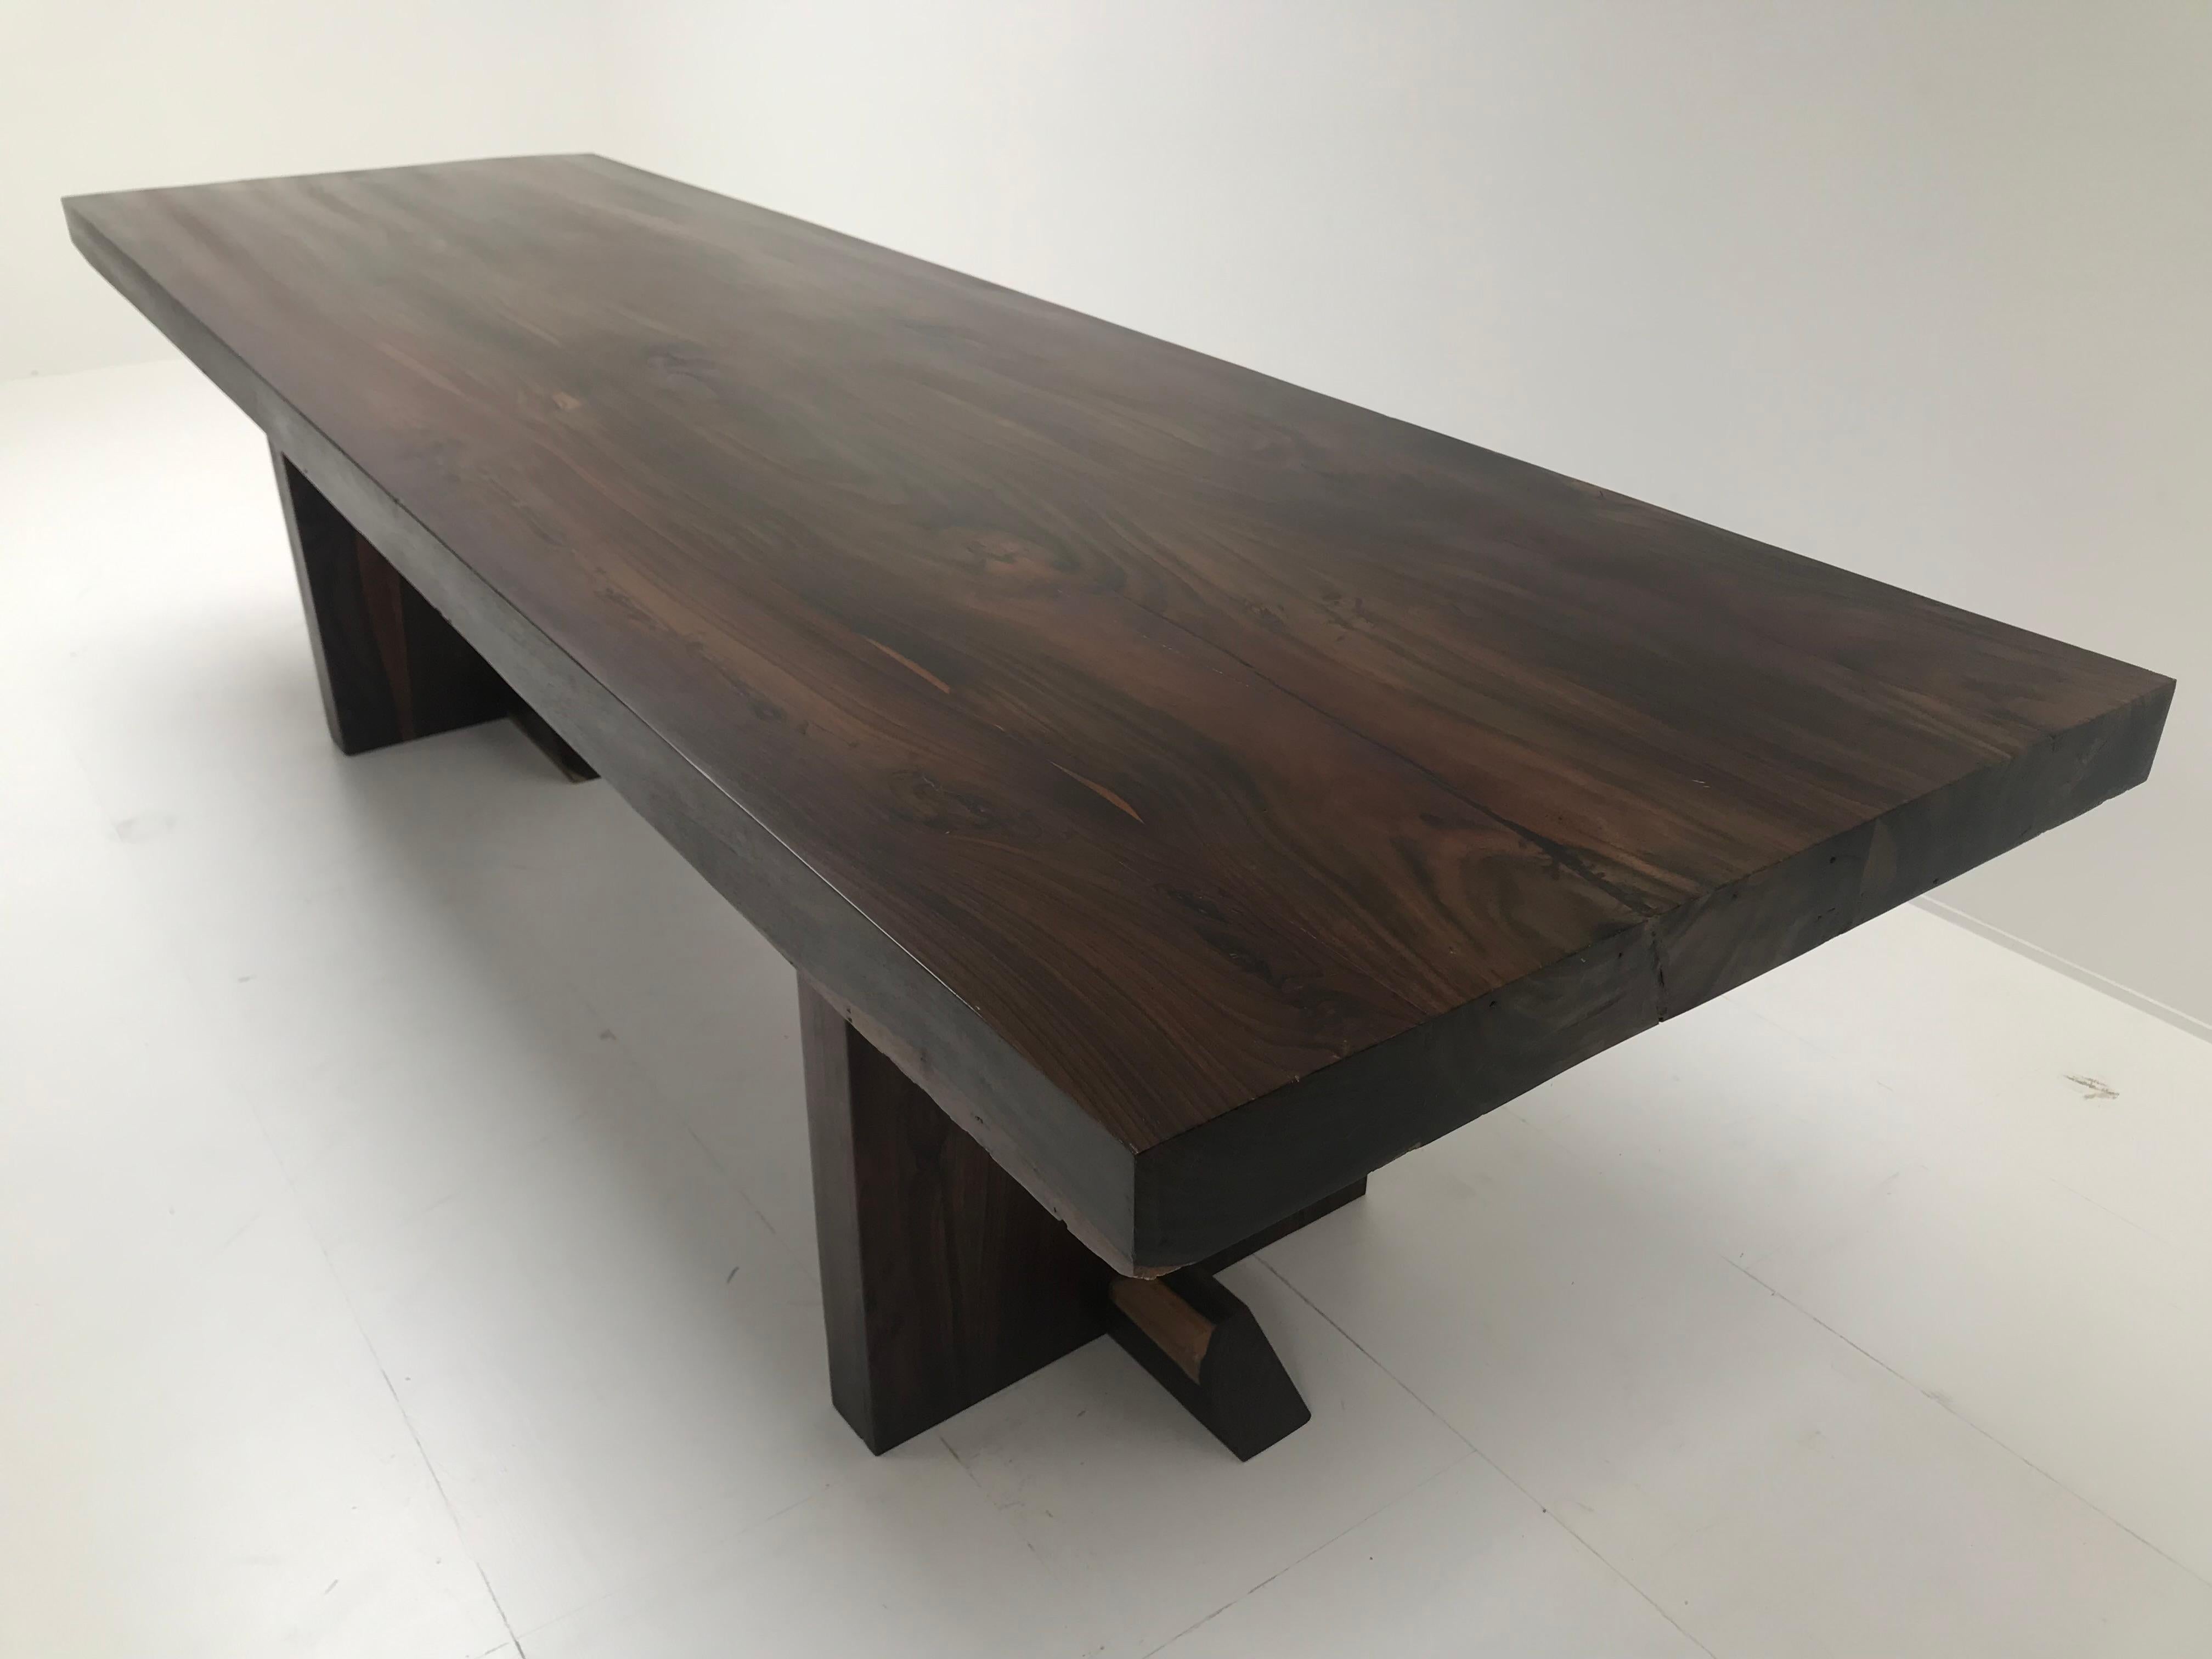 Table moderne exceptionnelle en bois de hêtre poli, pieds carrés en bois,

grande brillance du bois, design très simple mais puissant,

peut être utilisée comme table de salle à manger ou comme bureau